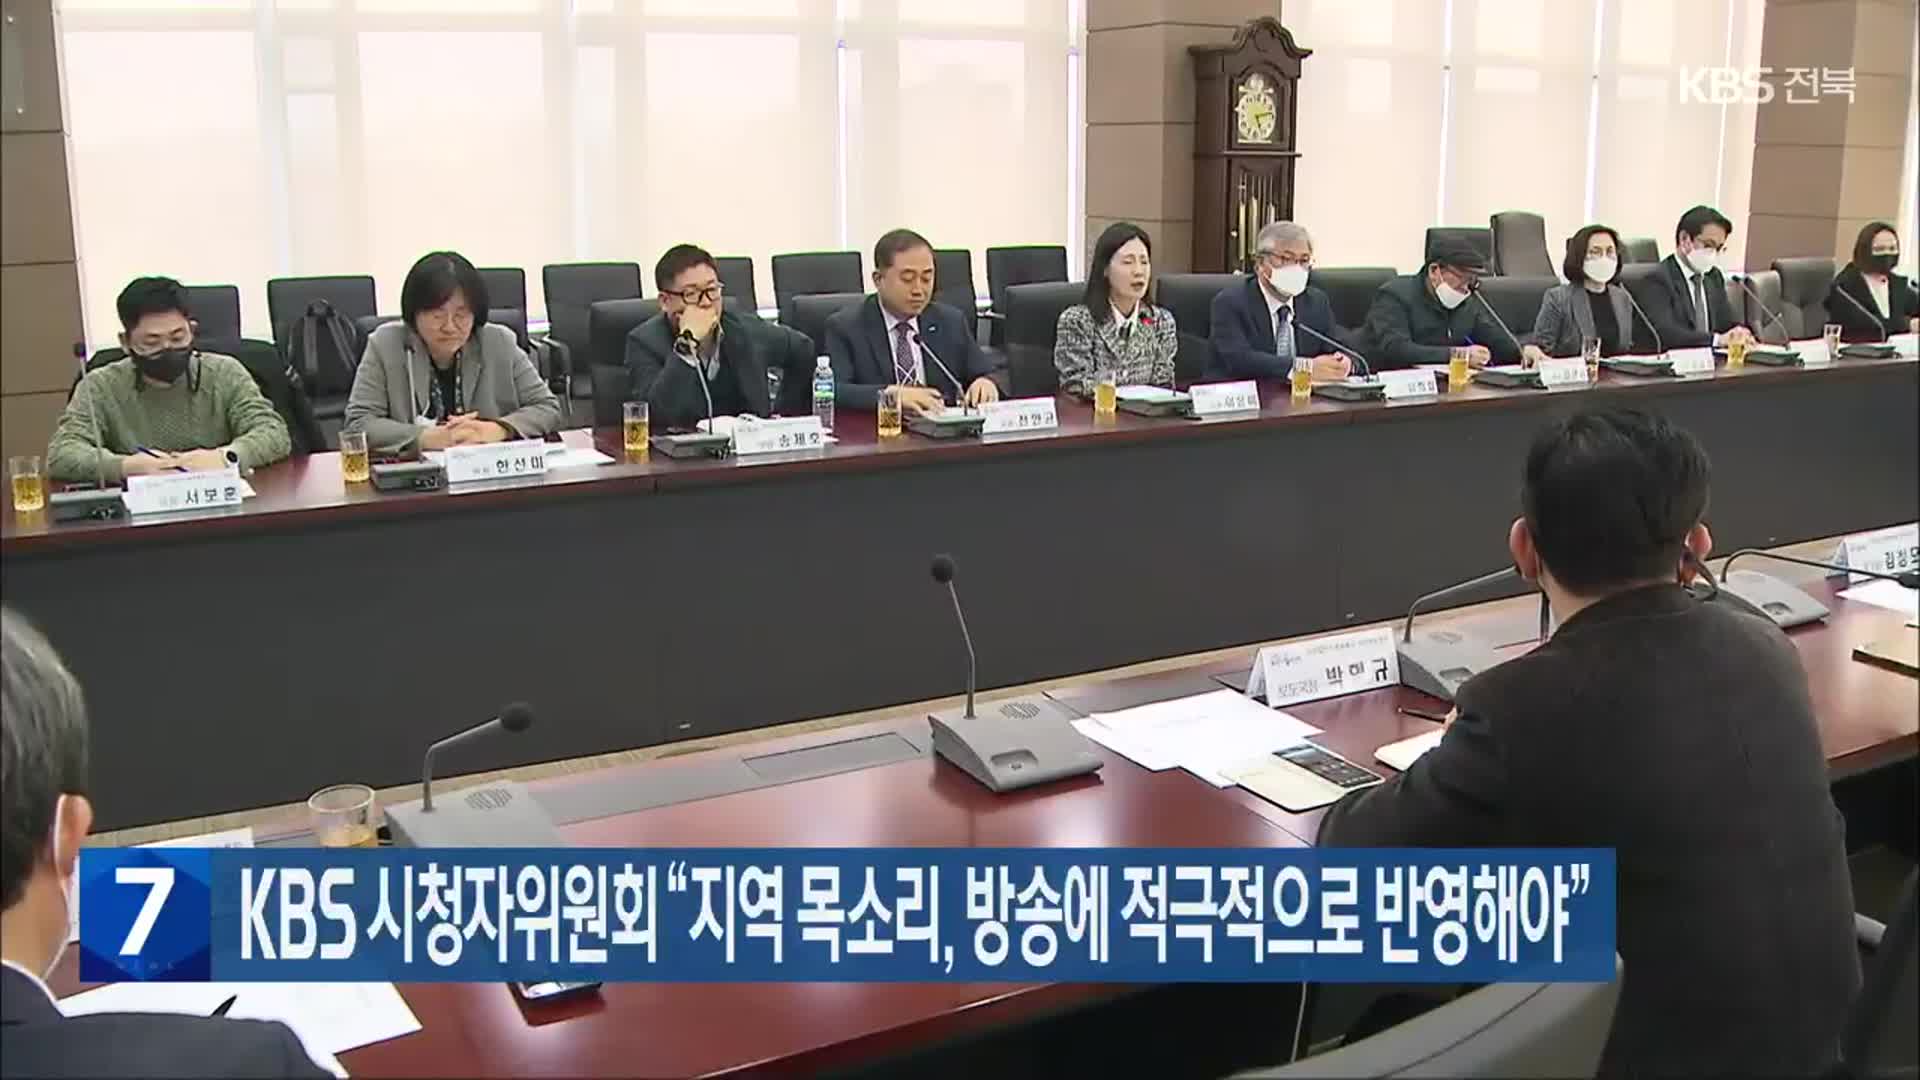 KBS 시청자위원회 “지역 목소리, 방송에 적극적으로 반영해야”